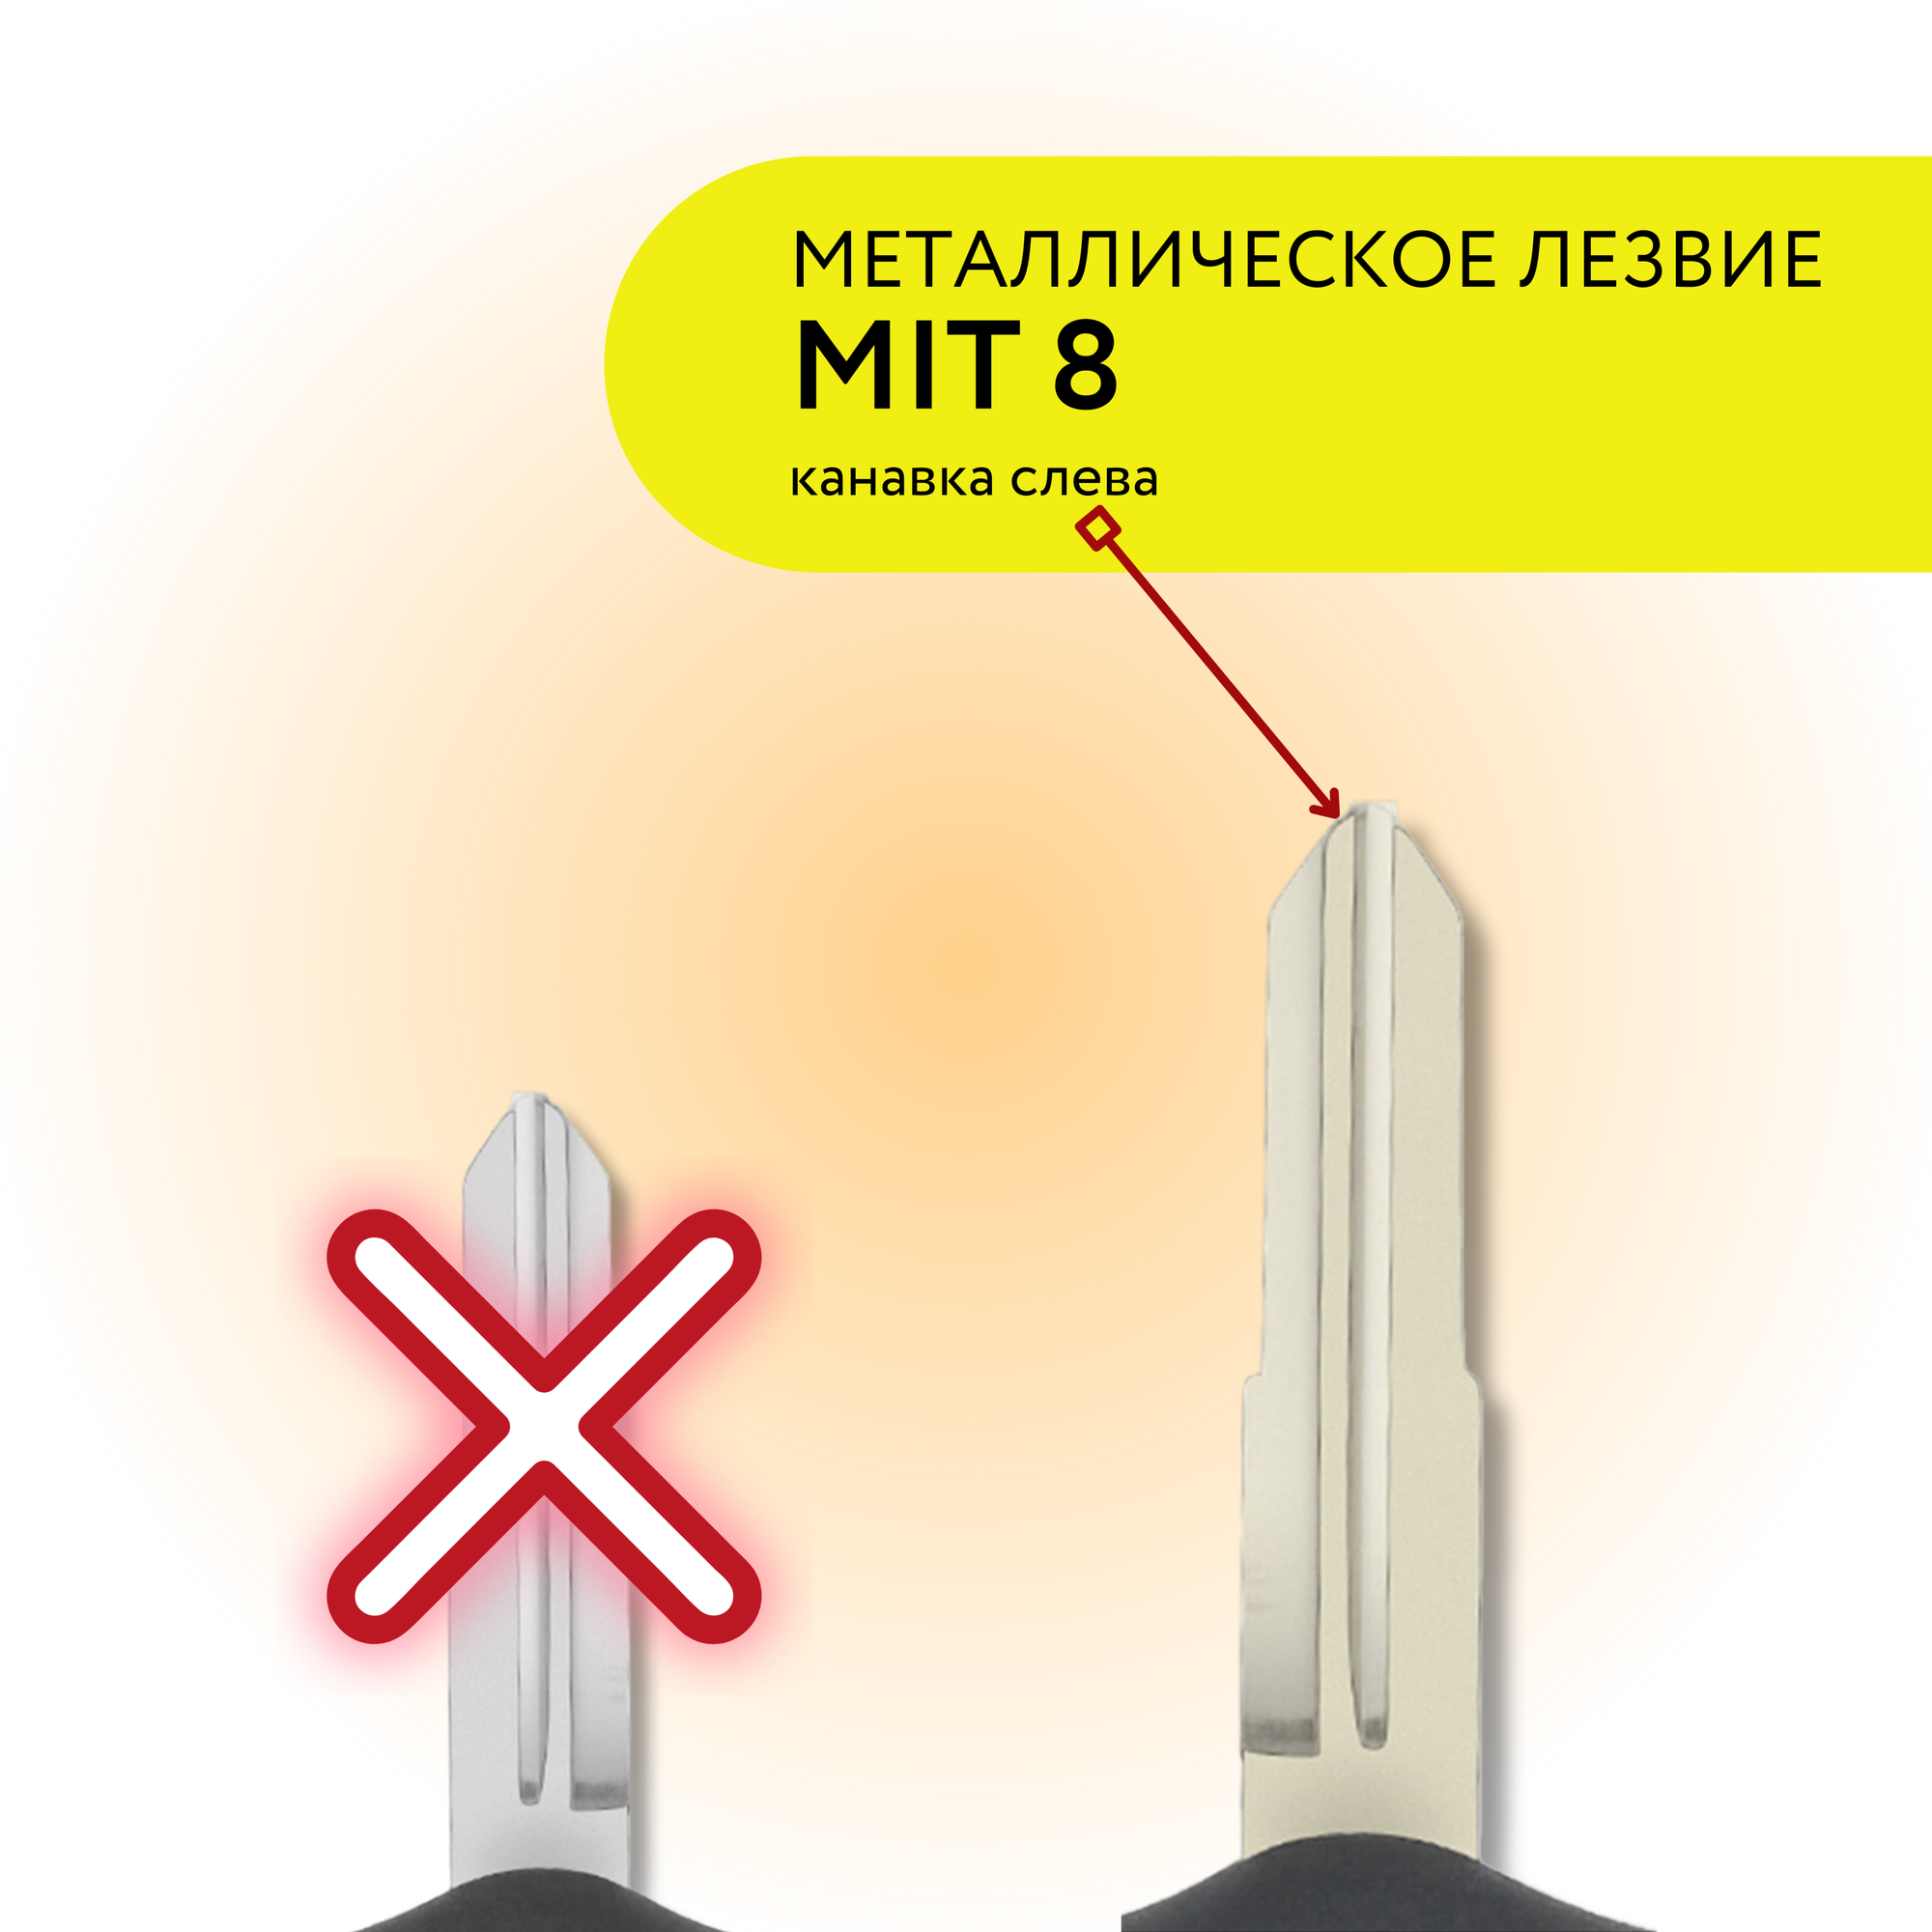 Корпус ключа зажигания для Мицубиси Mitsubishi лезвие MIT8 2 кнопки